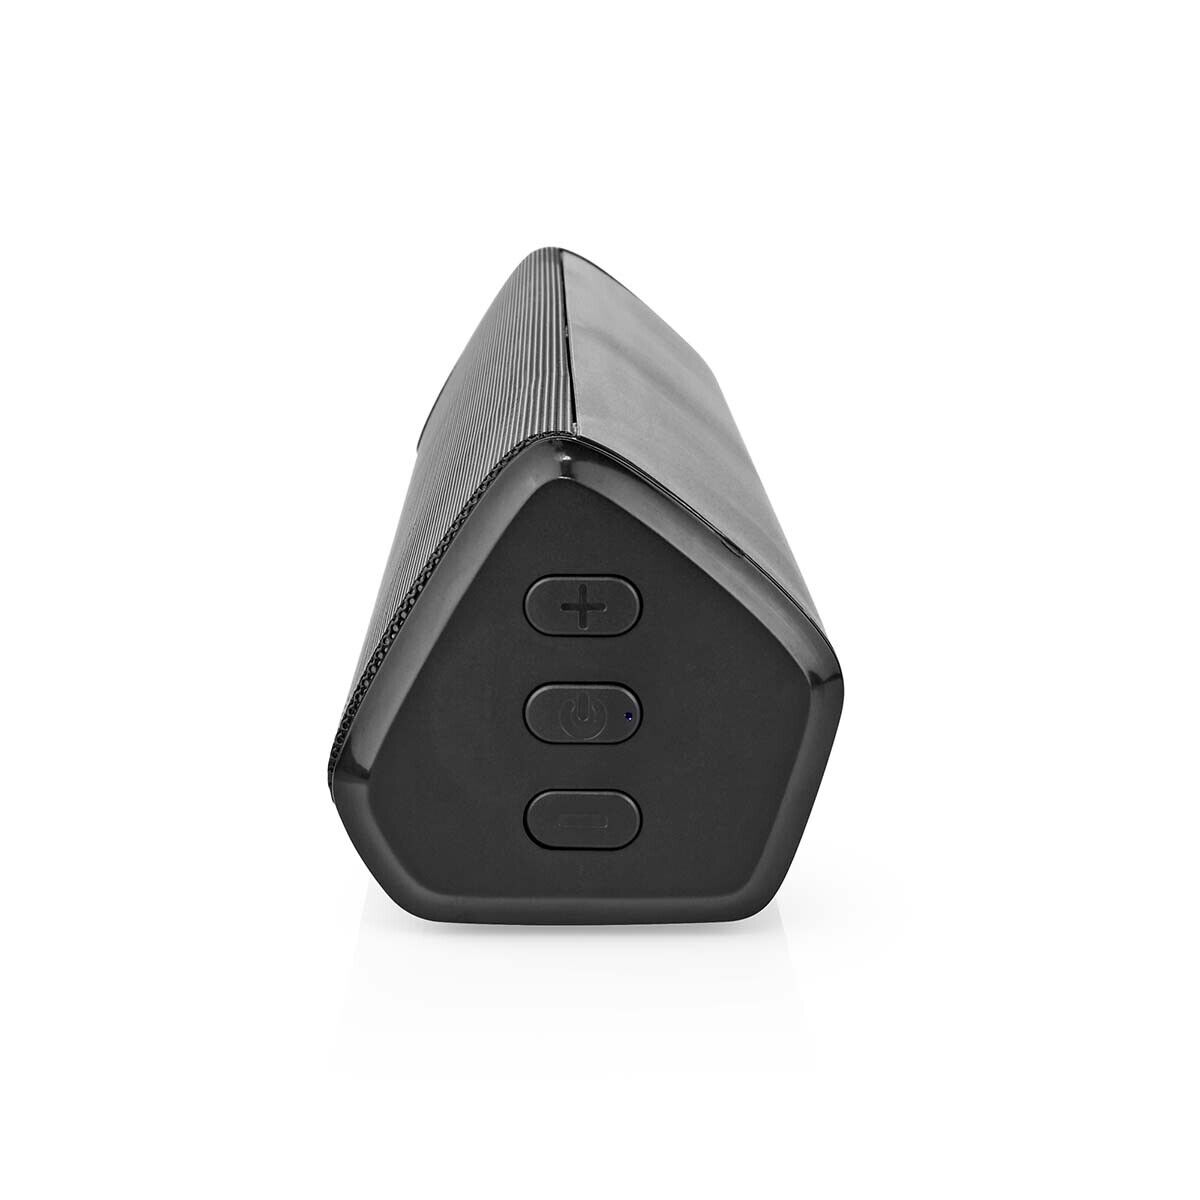 TWS Bluetooth Stereo Lautsprecher Box RGB Beleuchtung für Smartphone iPhone